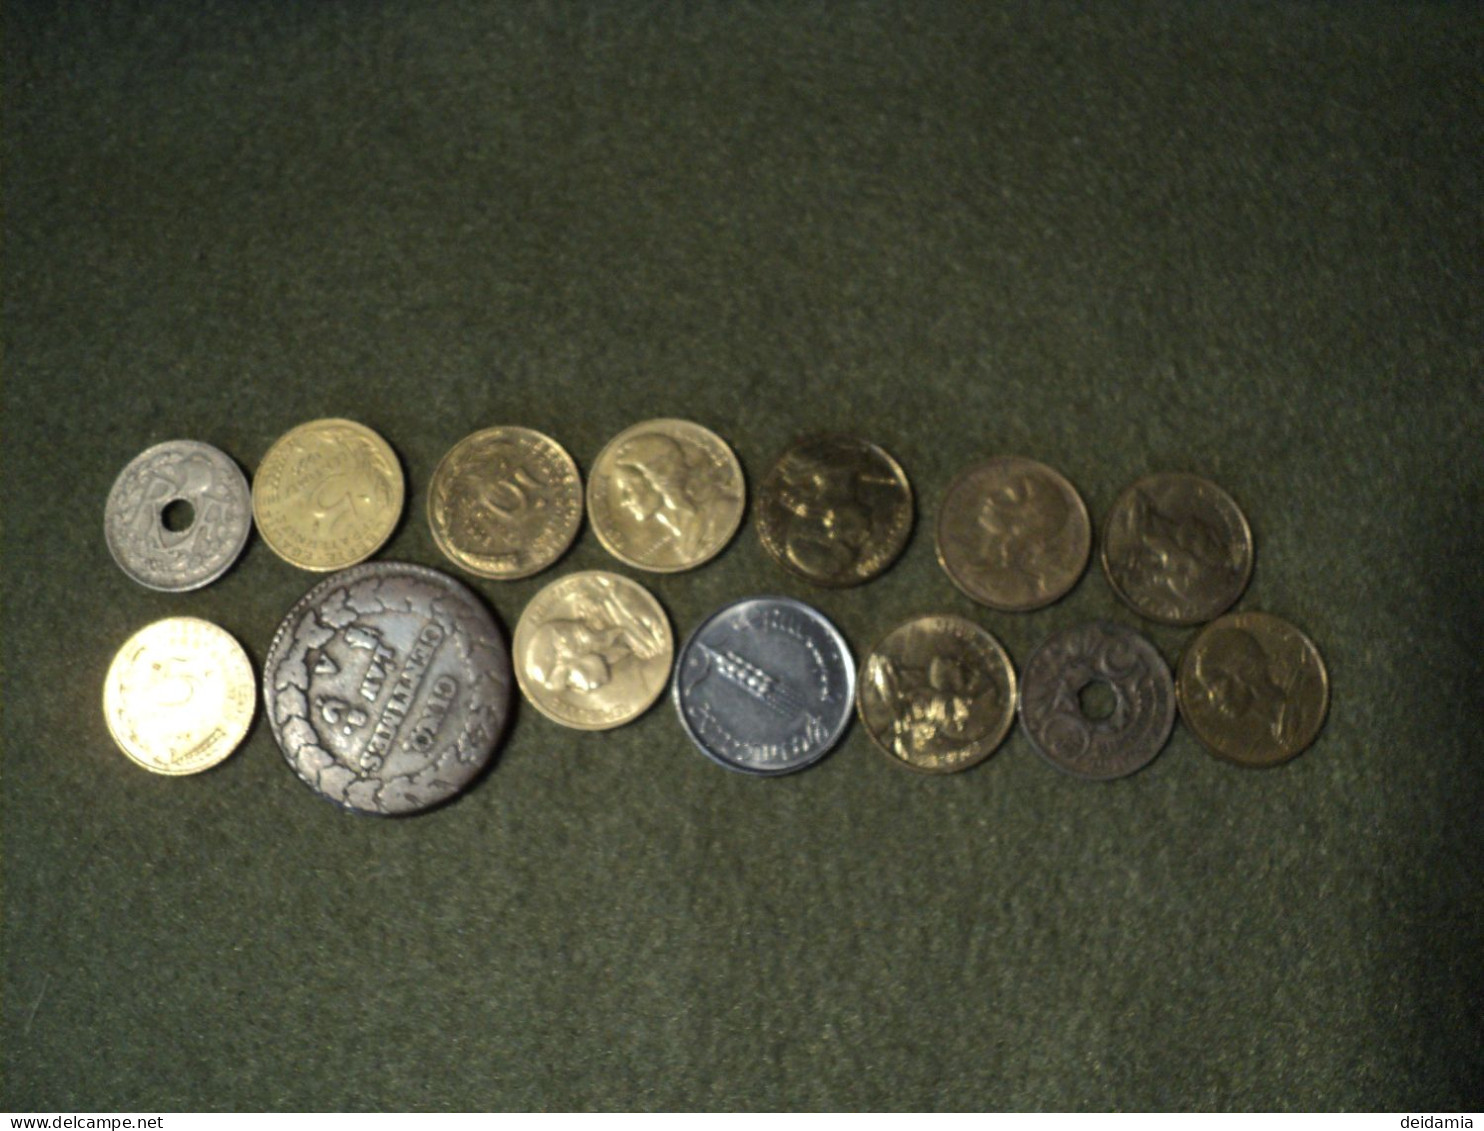 LOT DE 14 PIECES DE 5 CENTIMES DIFFERENTES. 1799 / 1998 - Kiloware - Münzen